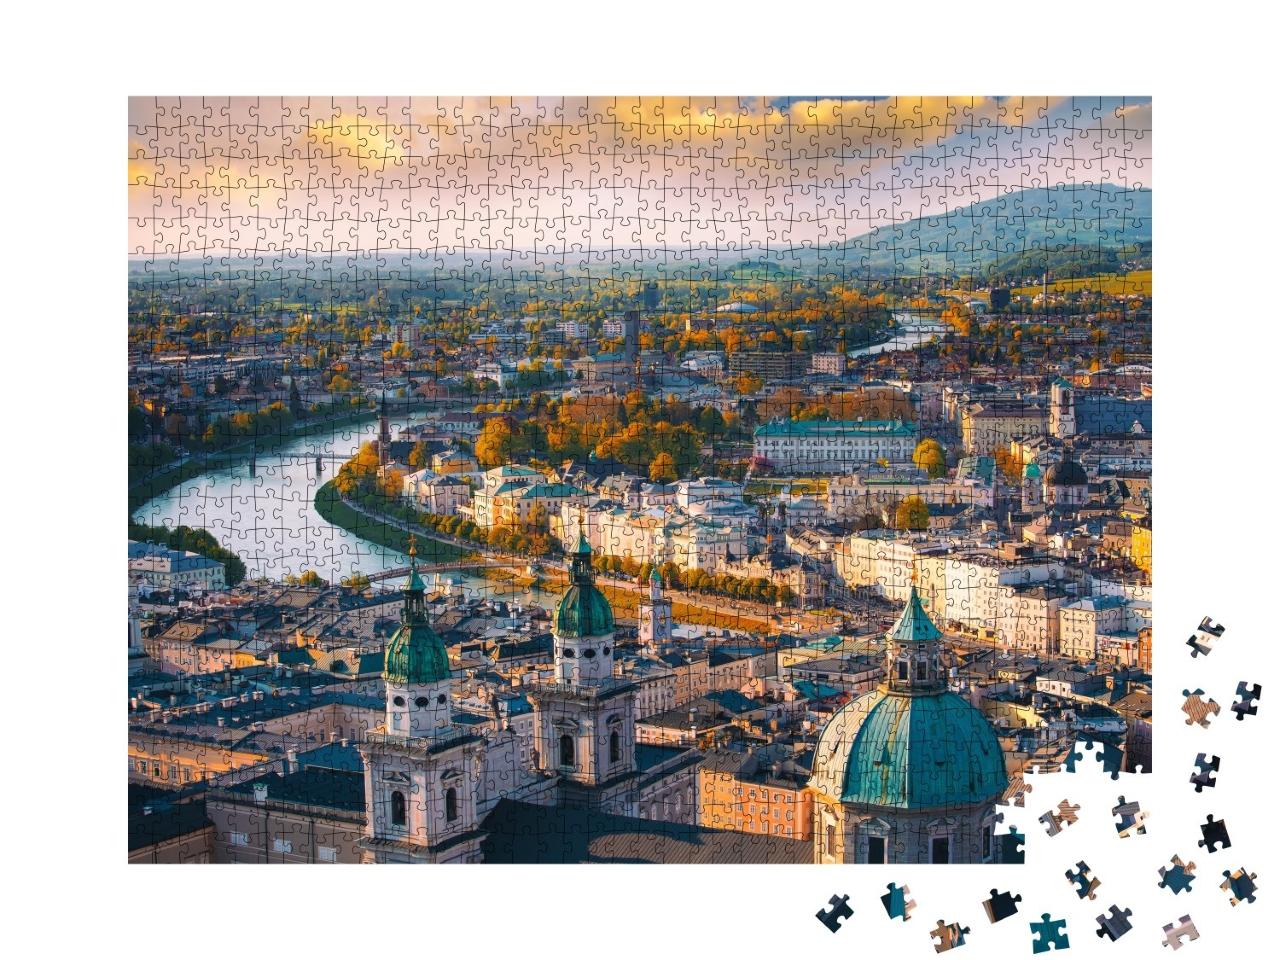 Puzzle de 1000 pièces « Vue automnale de Salzbourg, Autriche »